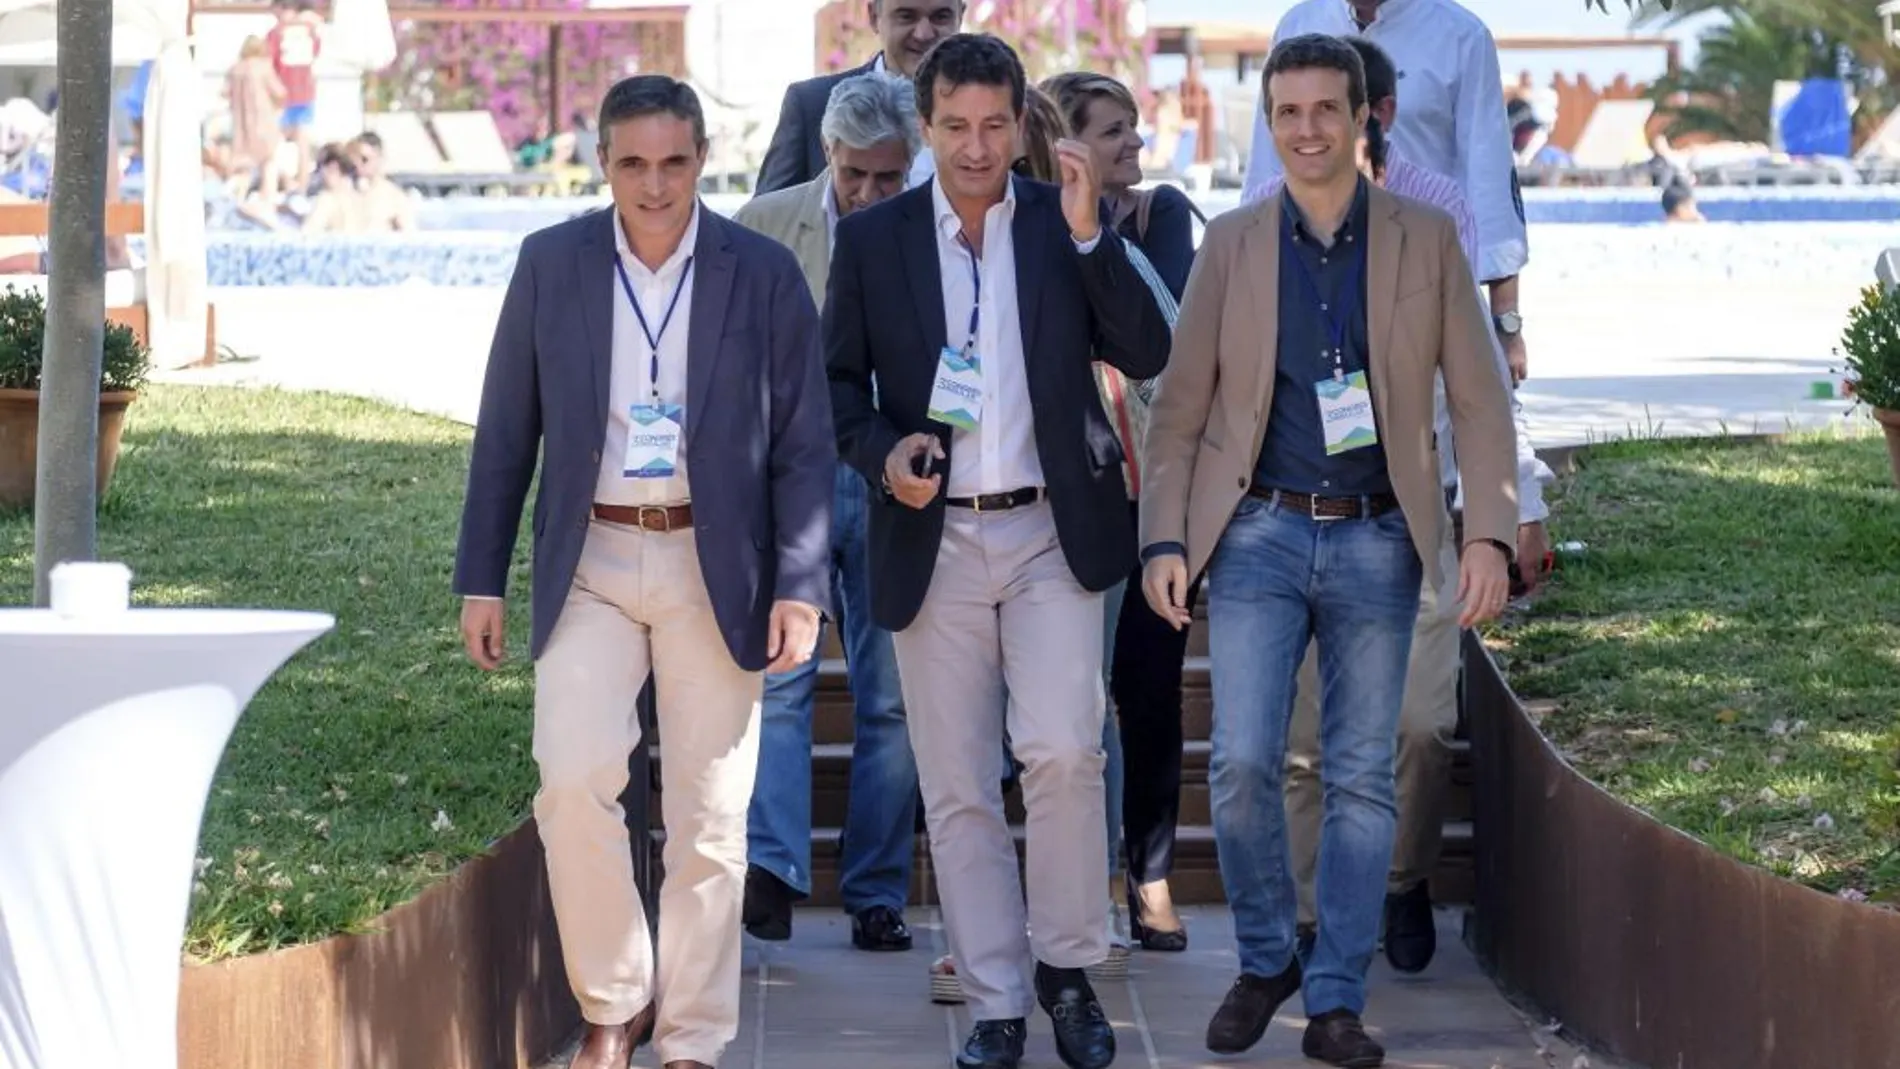 El vicesecretario general de Comunicación, Pablo Casado, junto al presidente del Partido Popular en Baleares, Biel Company, asisten al congreso del PP de Ibiza.